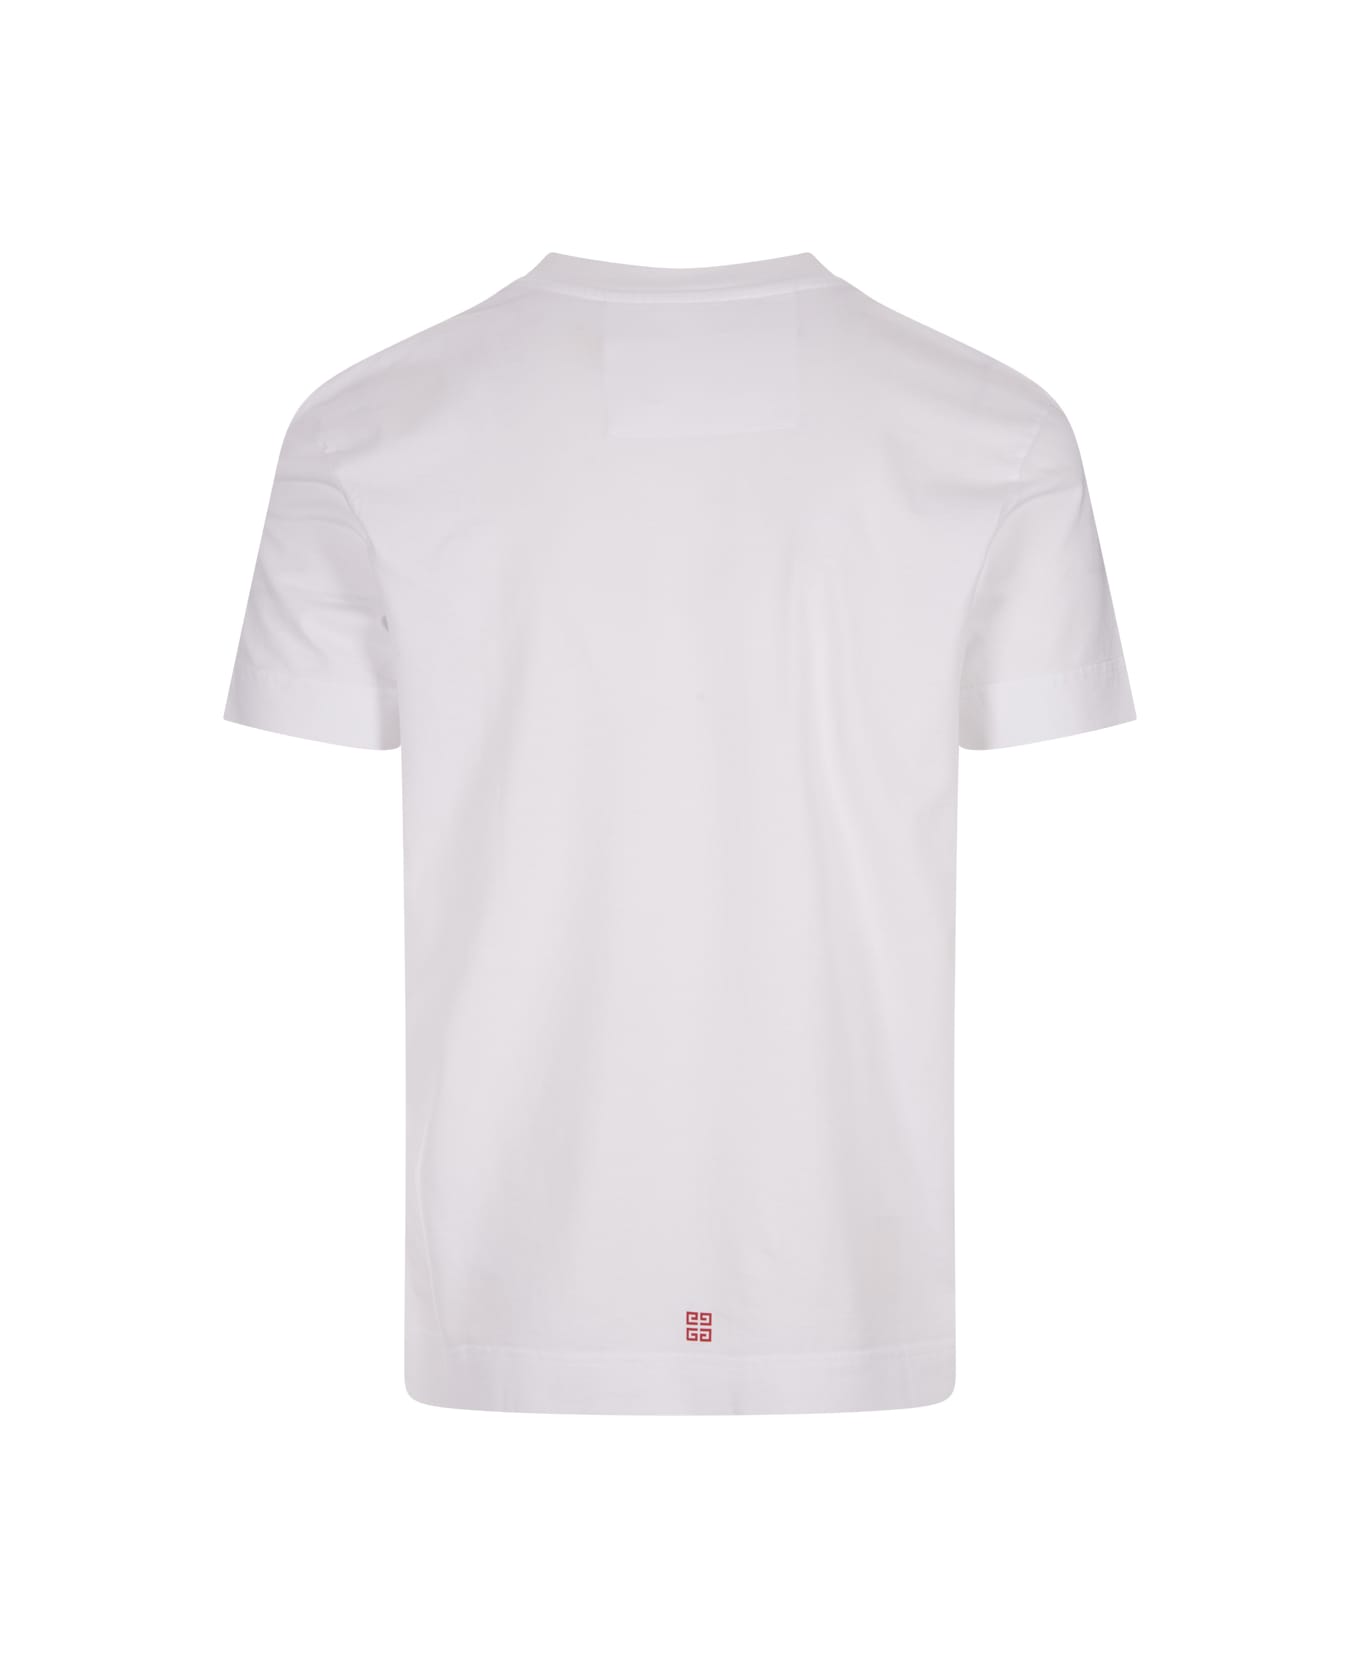 Givenchy 4g Stars Slim T-shirt In White Cotton - White